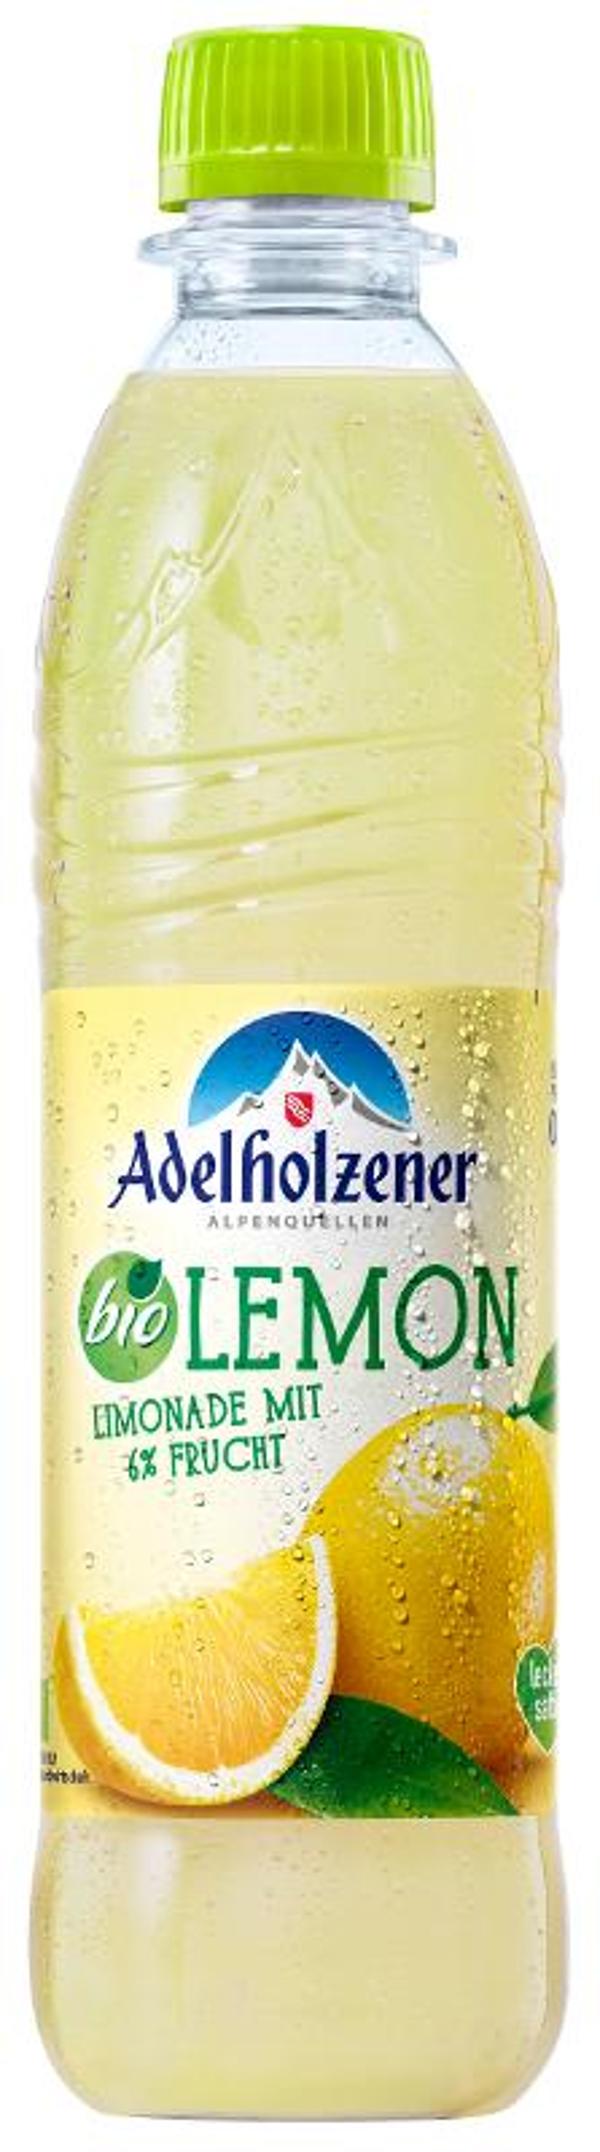 Produktfoto zu Adelholzener Lemon